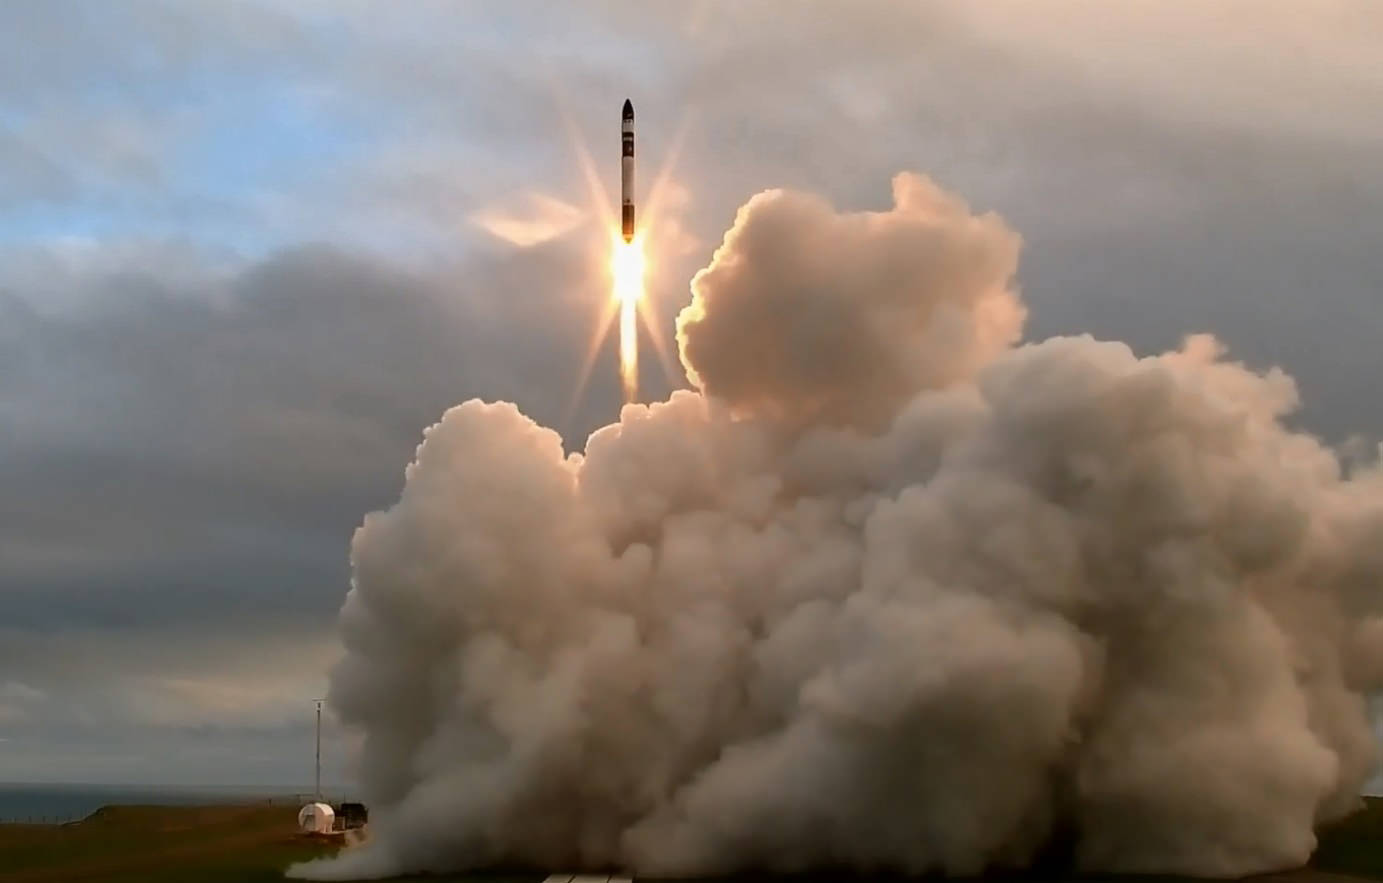 O rachetă rusească a scăpată de sub control și se îndreaptă cu viteză spre Pământ